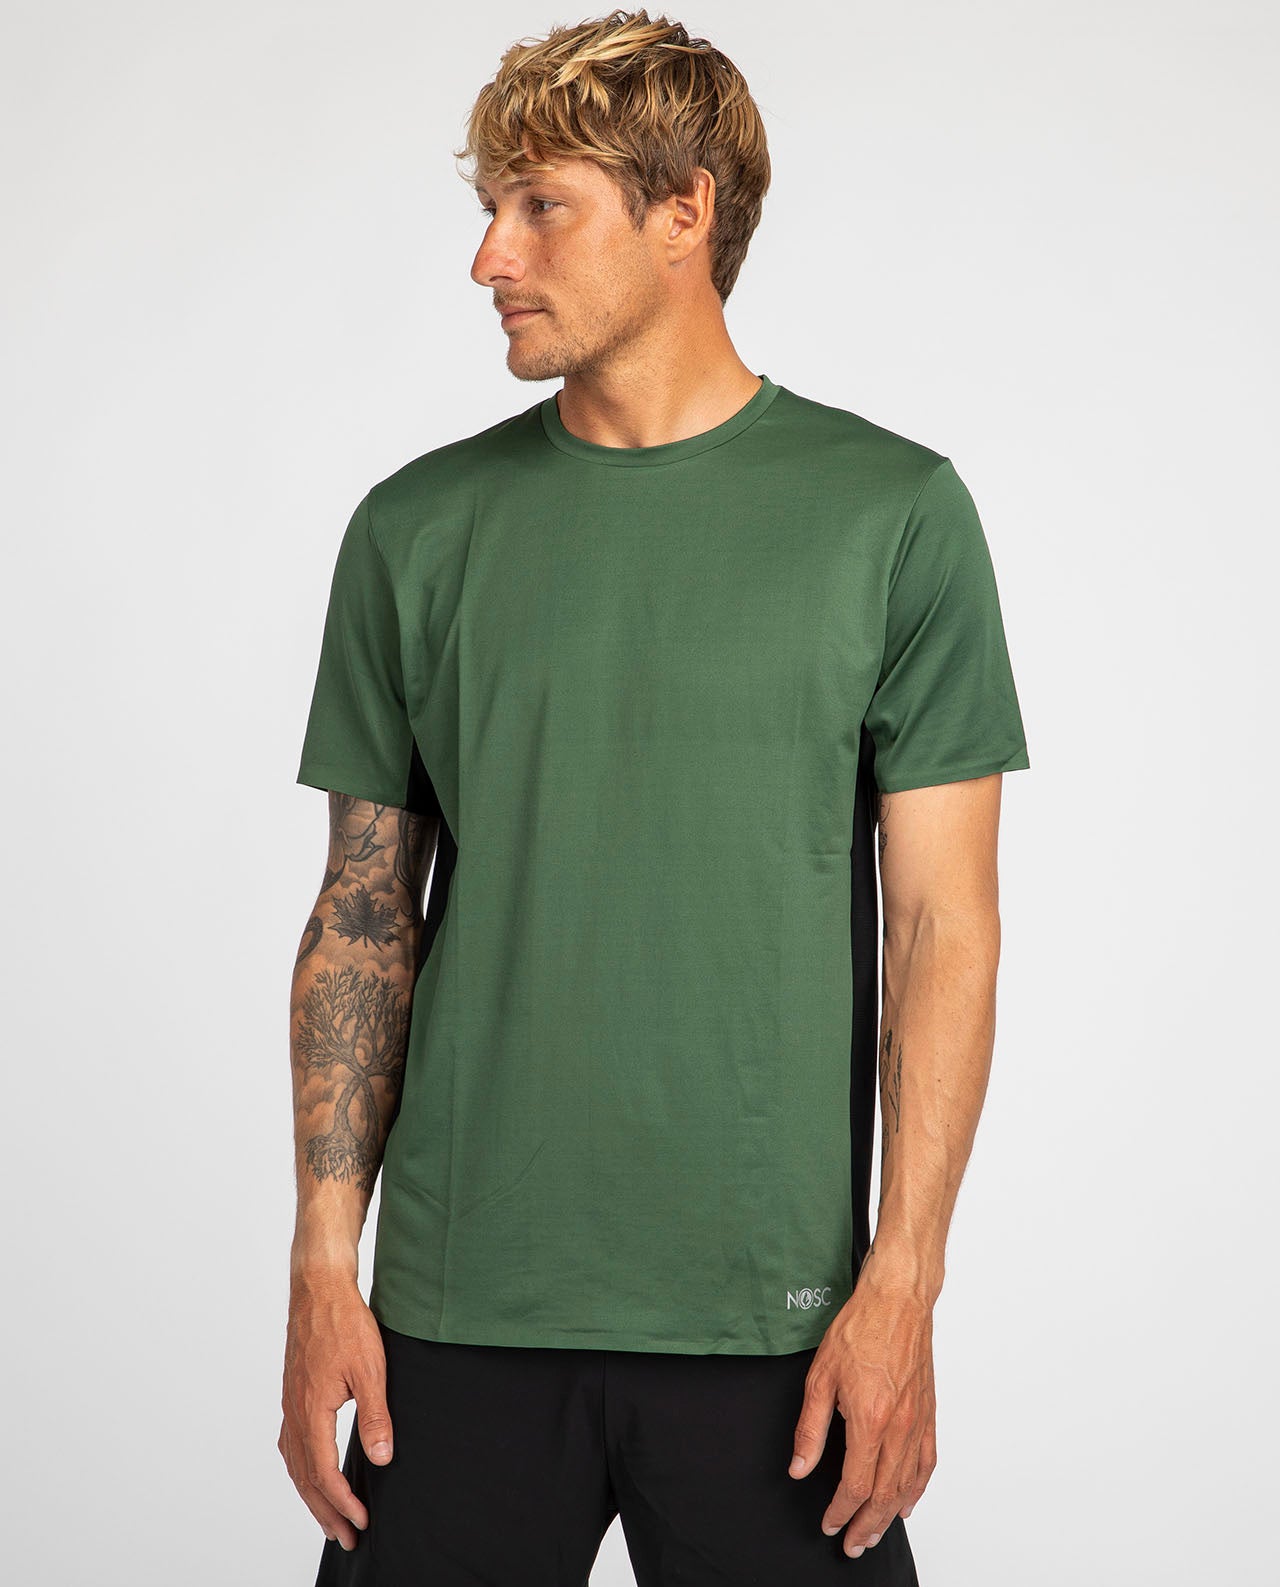 marché commun nosc t-shirt sport homme respirant recyclé fabriqué en Europe éco-responsable éthique kaki